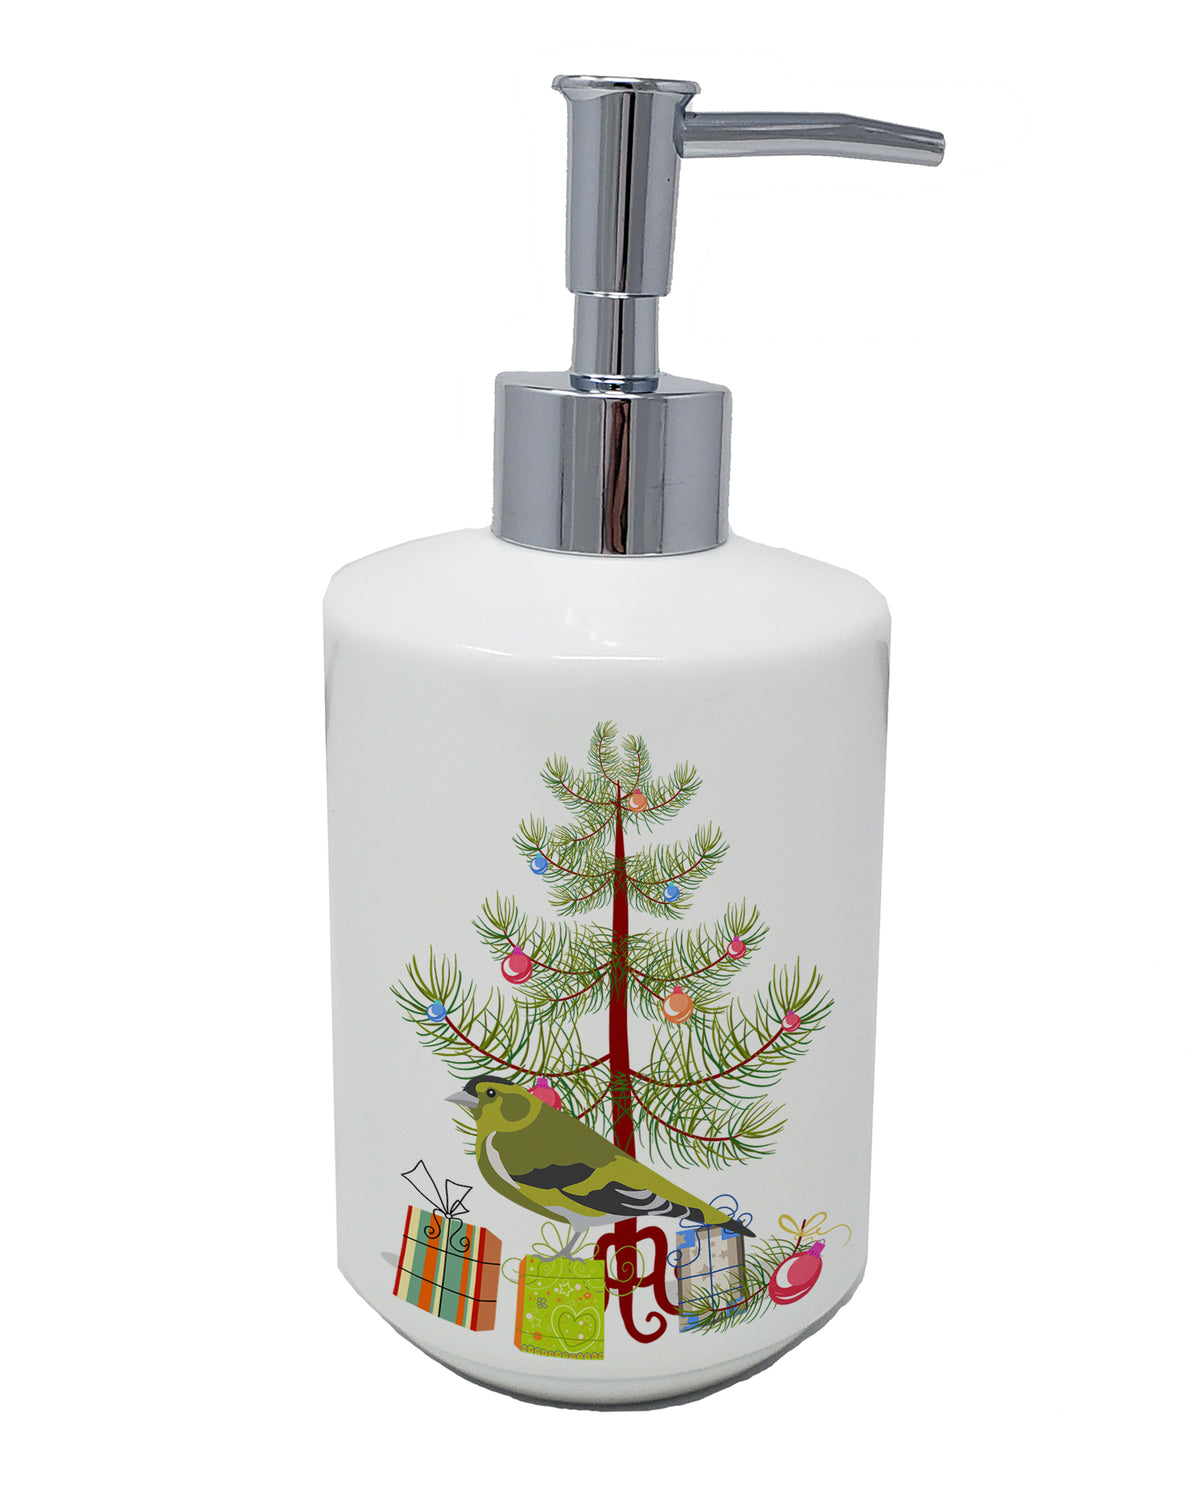 Buy this Siskin Merry Christmas Ceramic Soap Dispenser